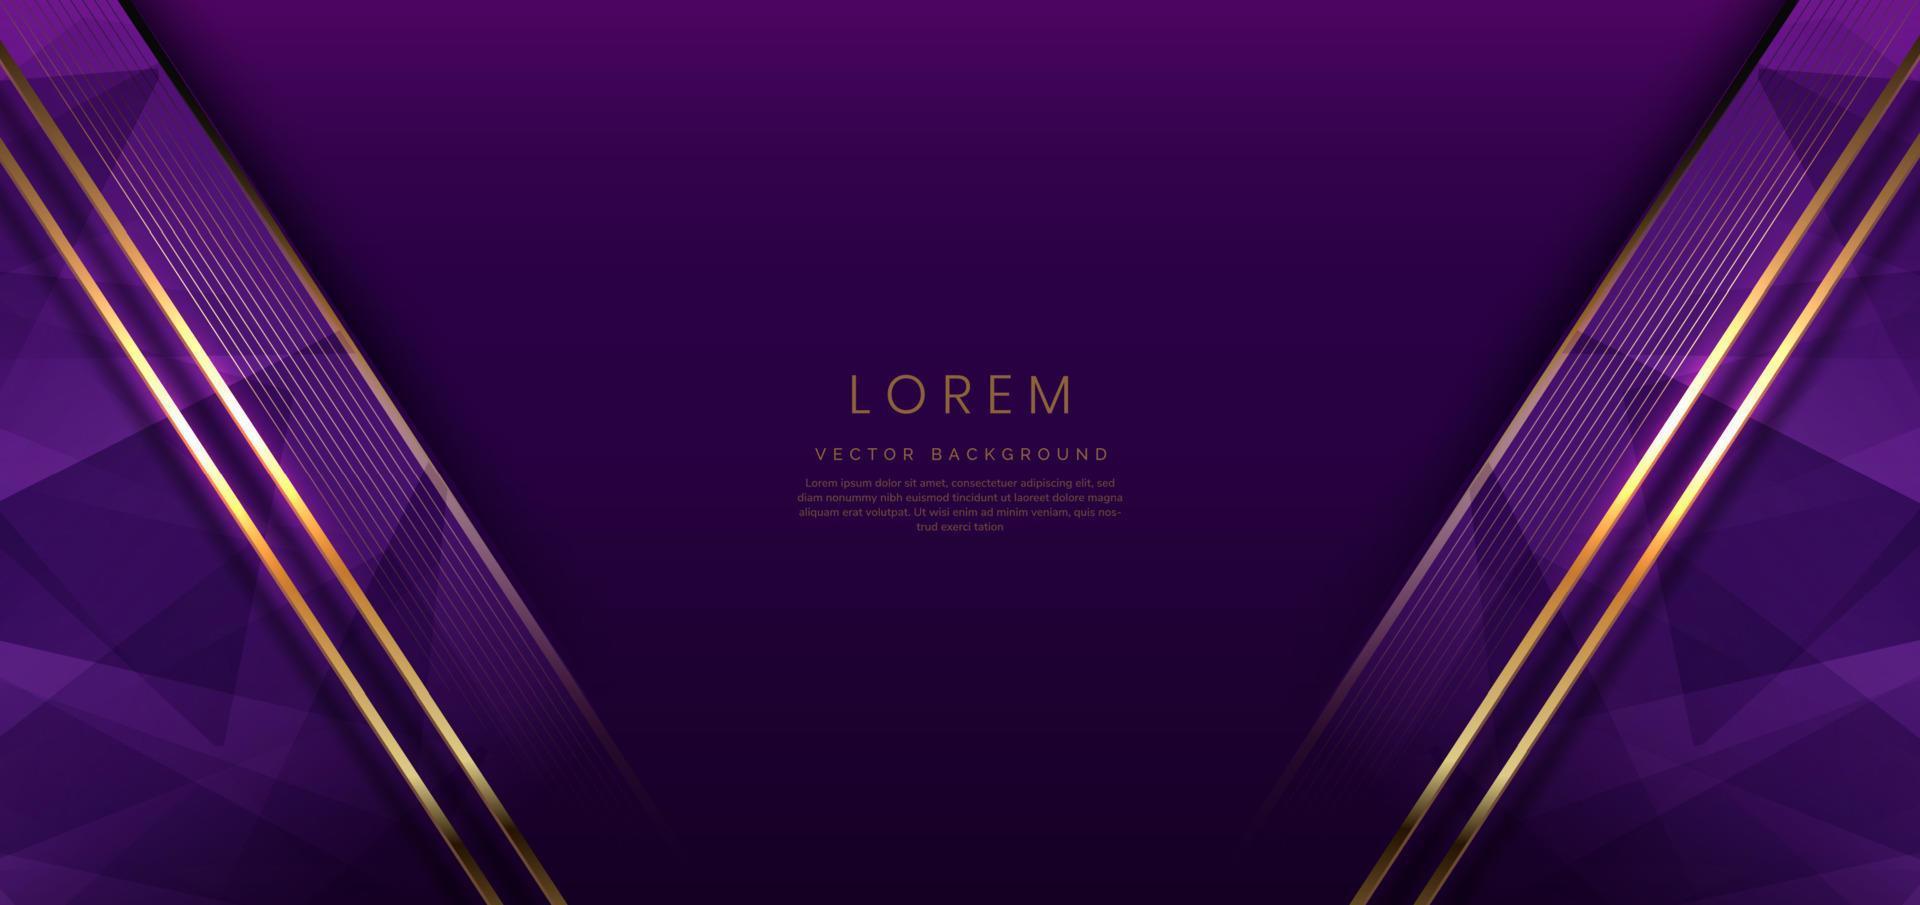 arrière-plan abstrait luxe violet foncé diagonale géométrique élégante avec effet d'éclairage doré et mousseux avec espace de copie pour le texte. vecteur